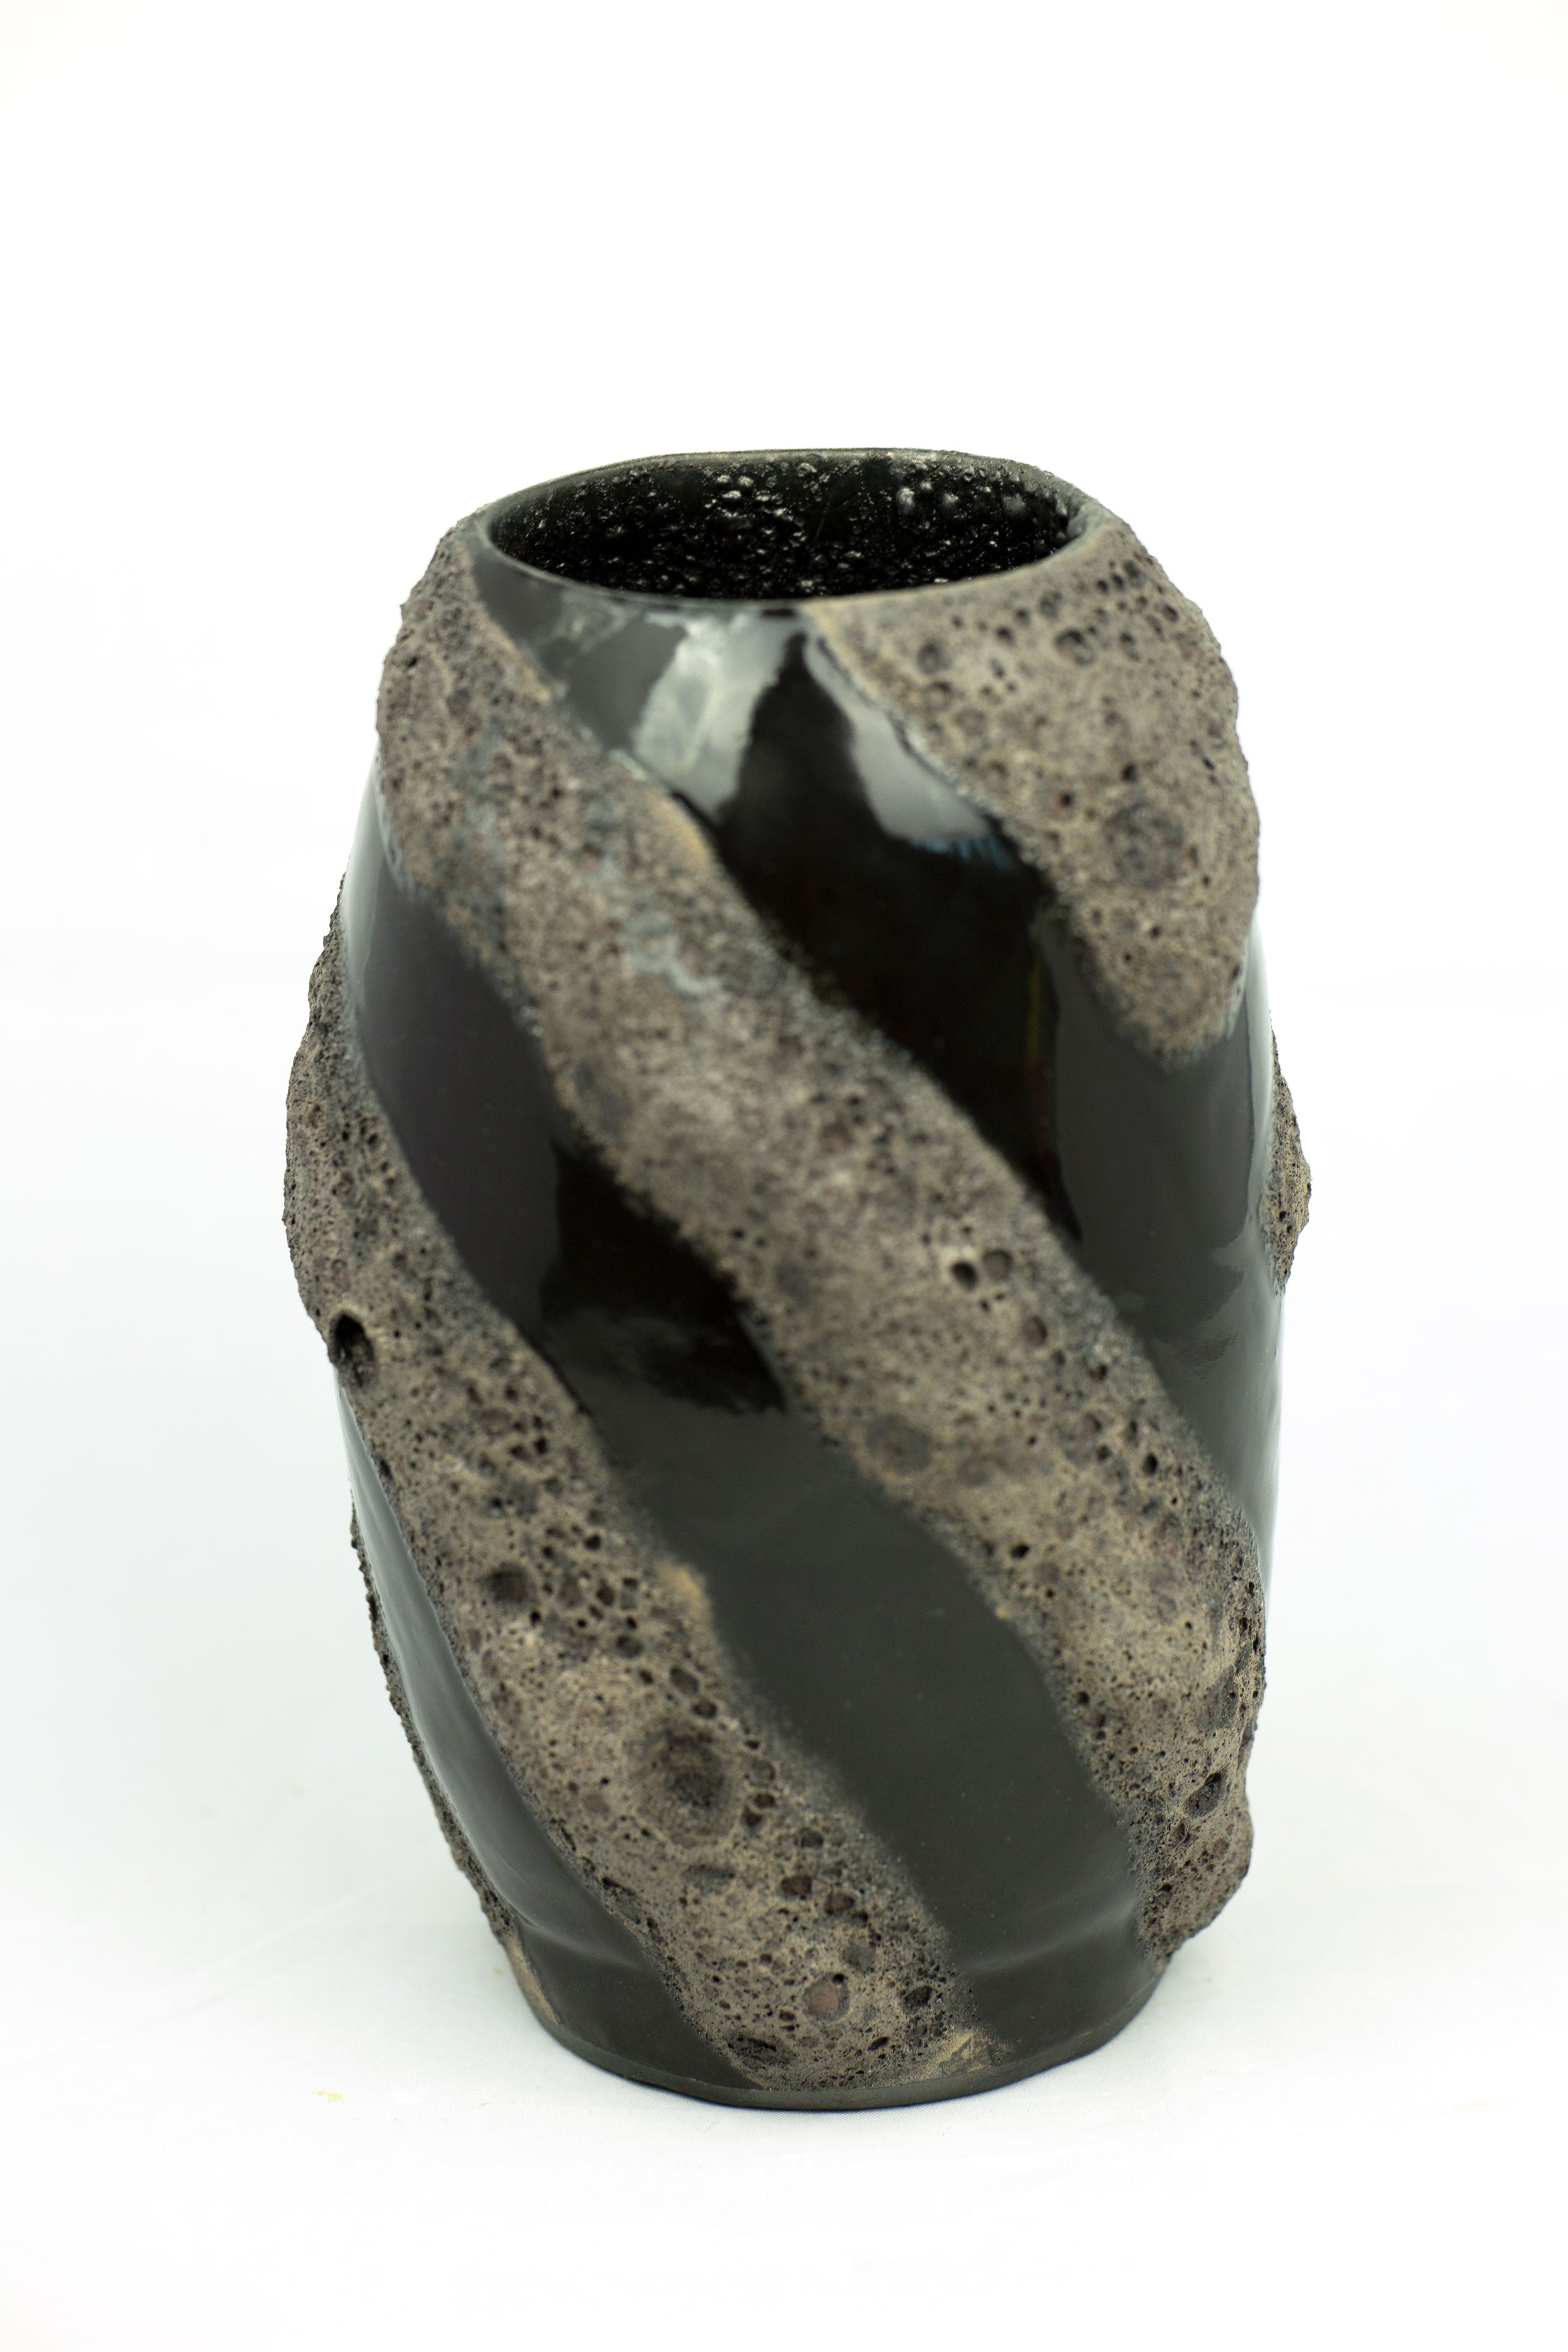 Black Lava Laze on Porcelain Vessel (SOLD)